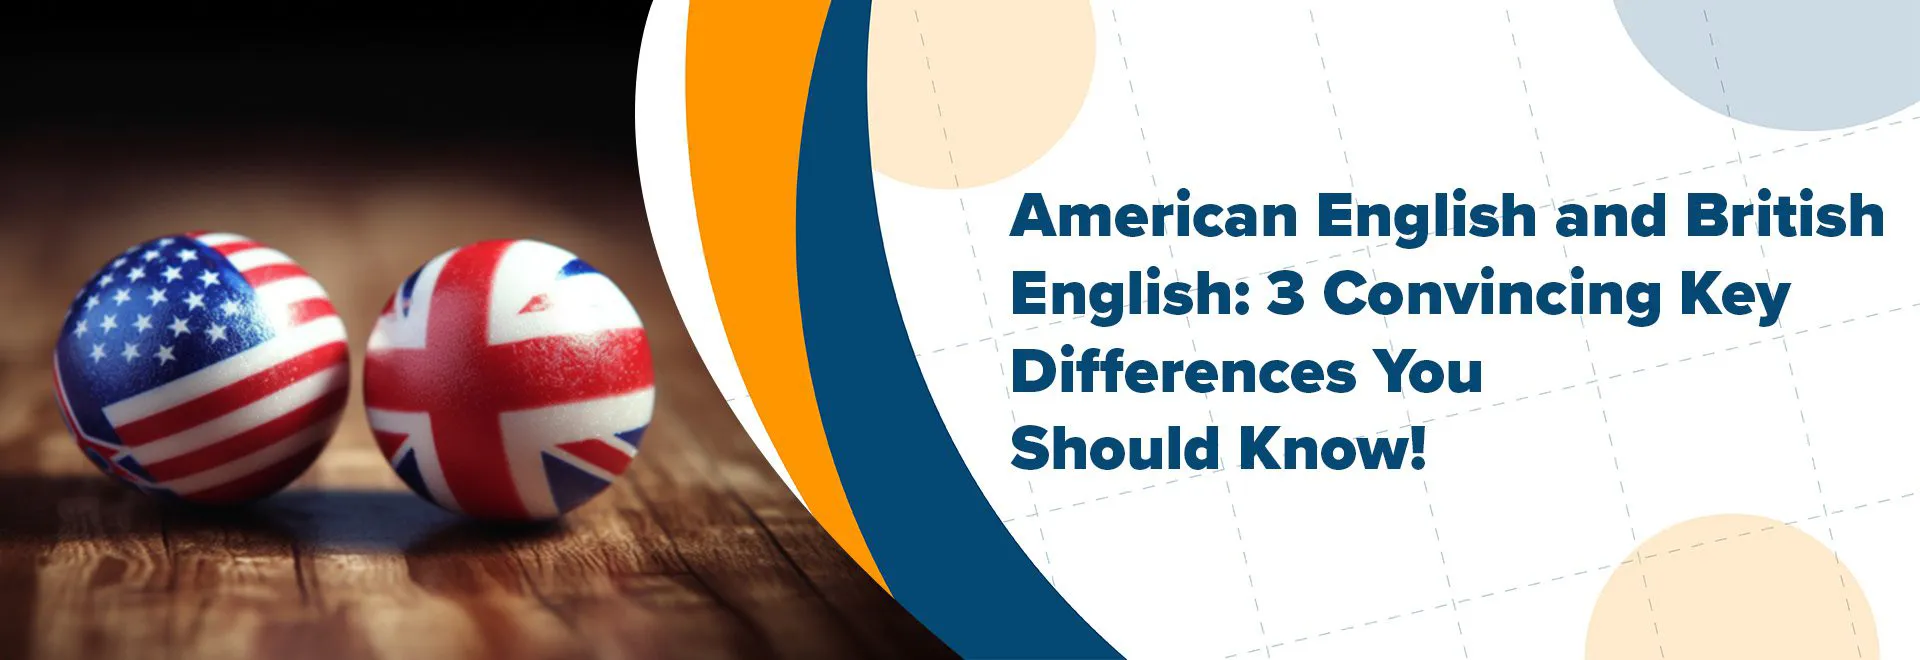 ความแตกต่างระหว่างภาษาอังกฤษแบบอเมริกันและภาษาอังกฤษแบบบริติช